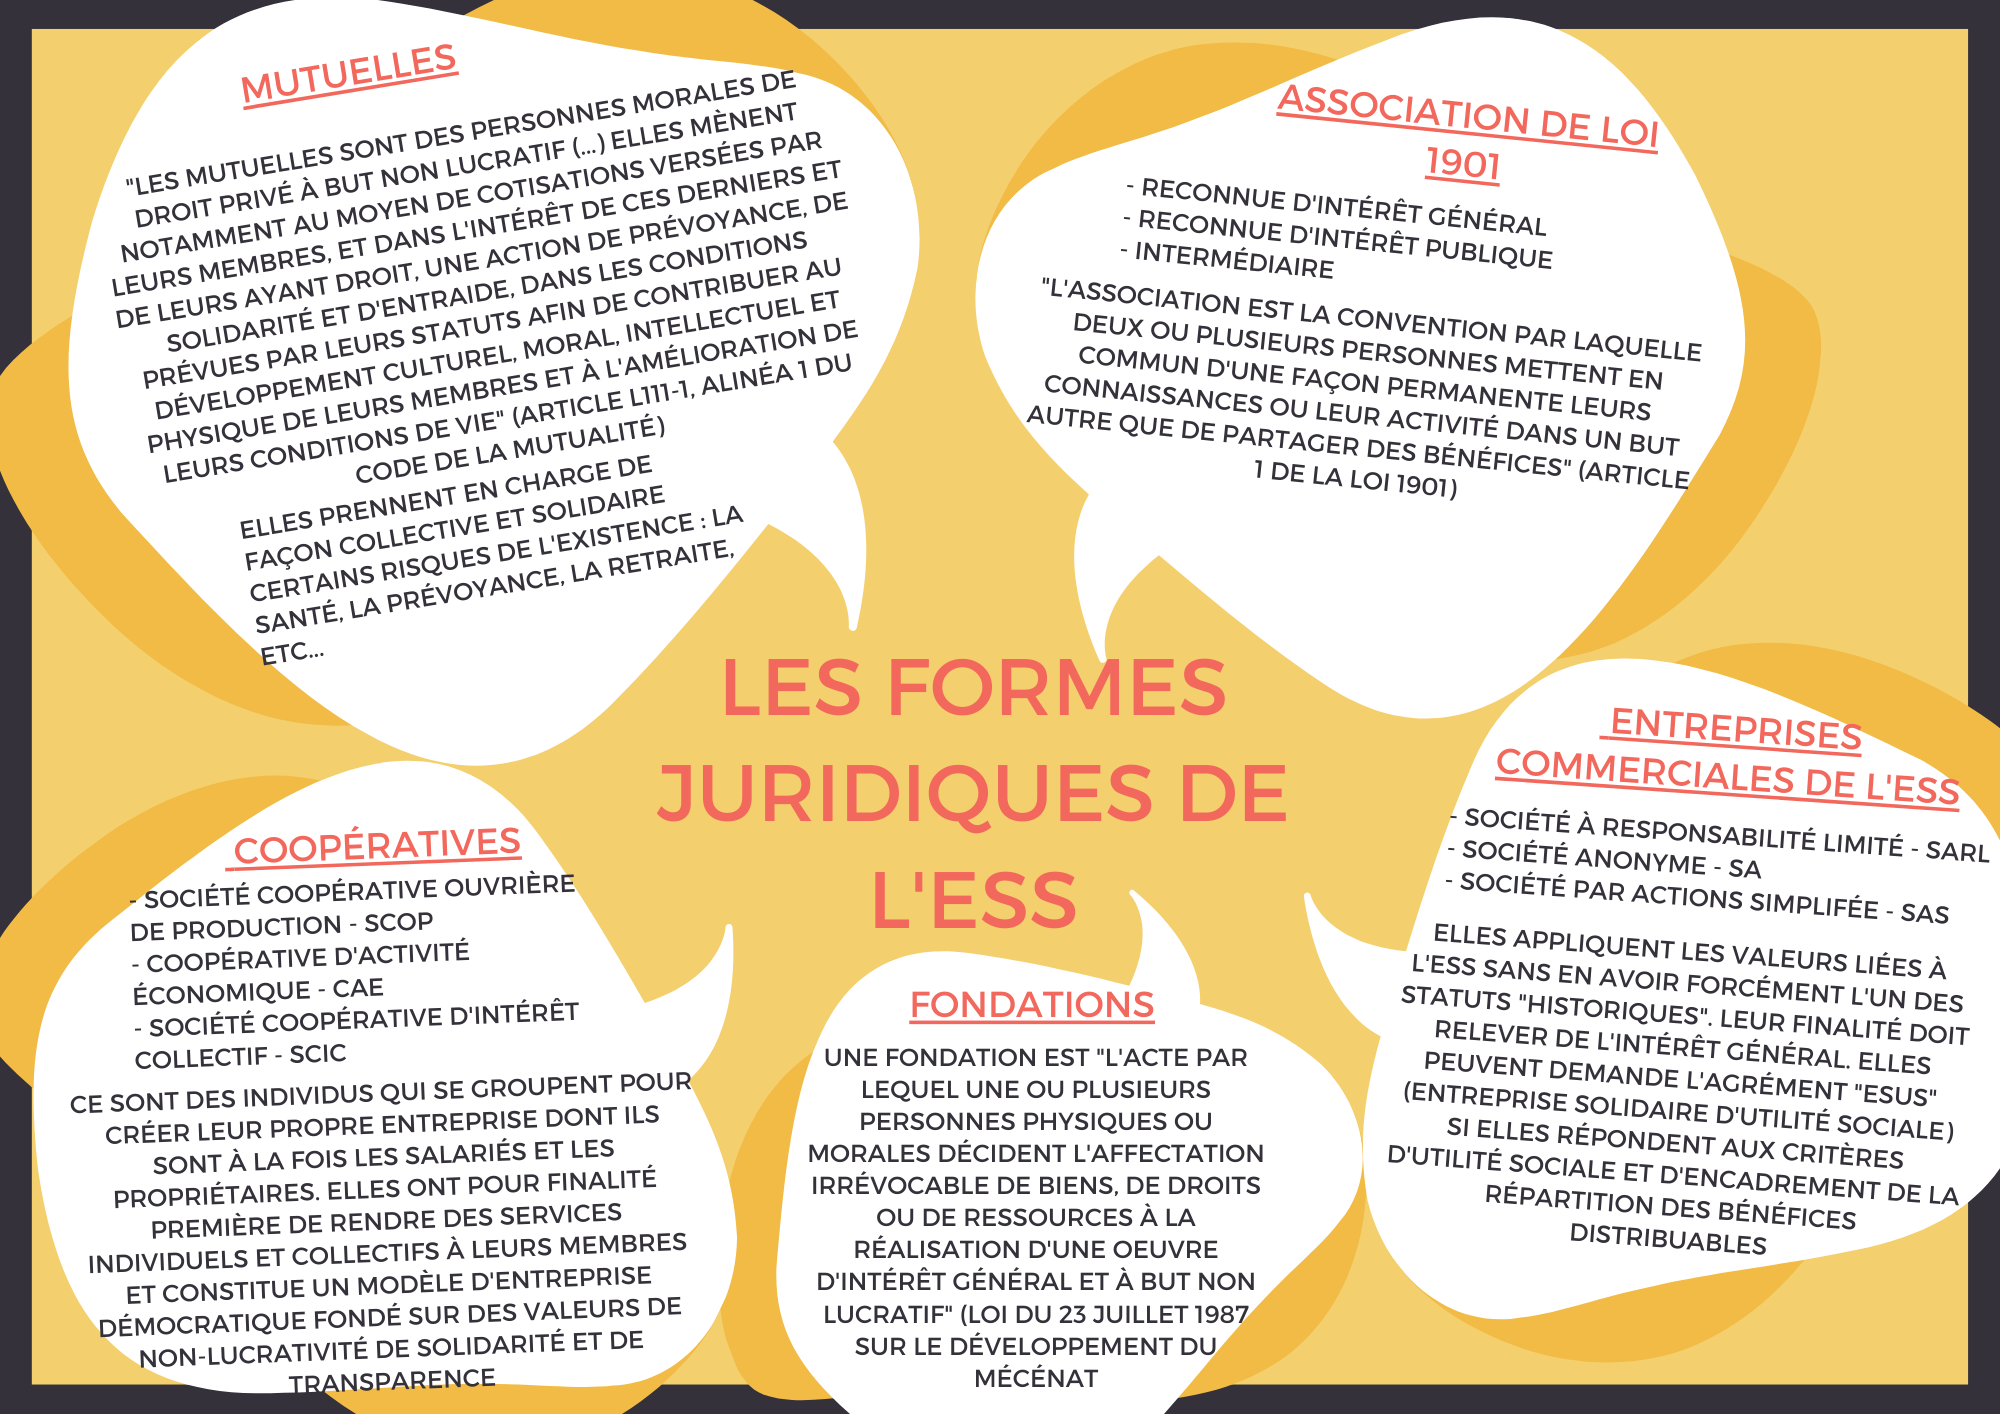 image les_formes_juridiques_de_less.png (0.9MB)